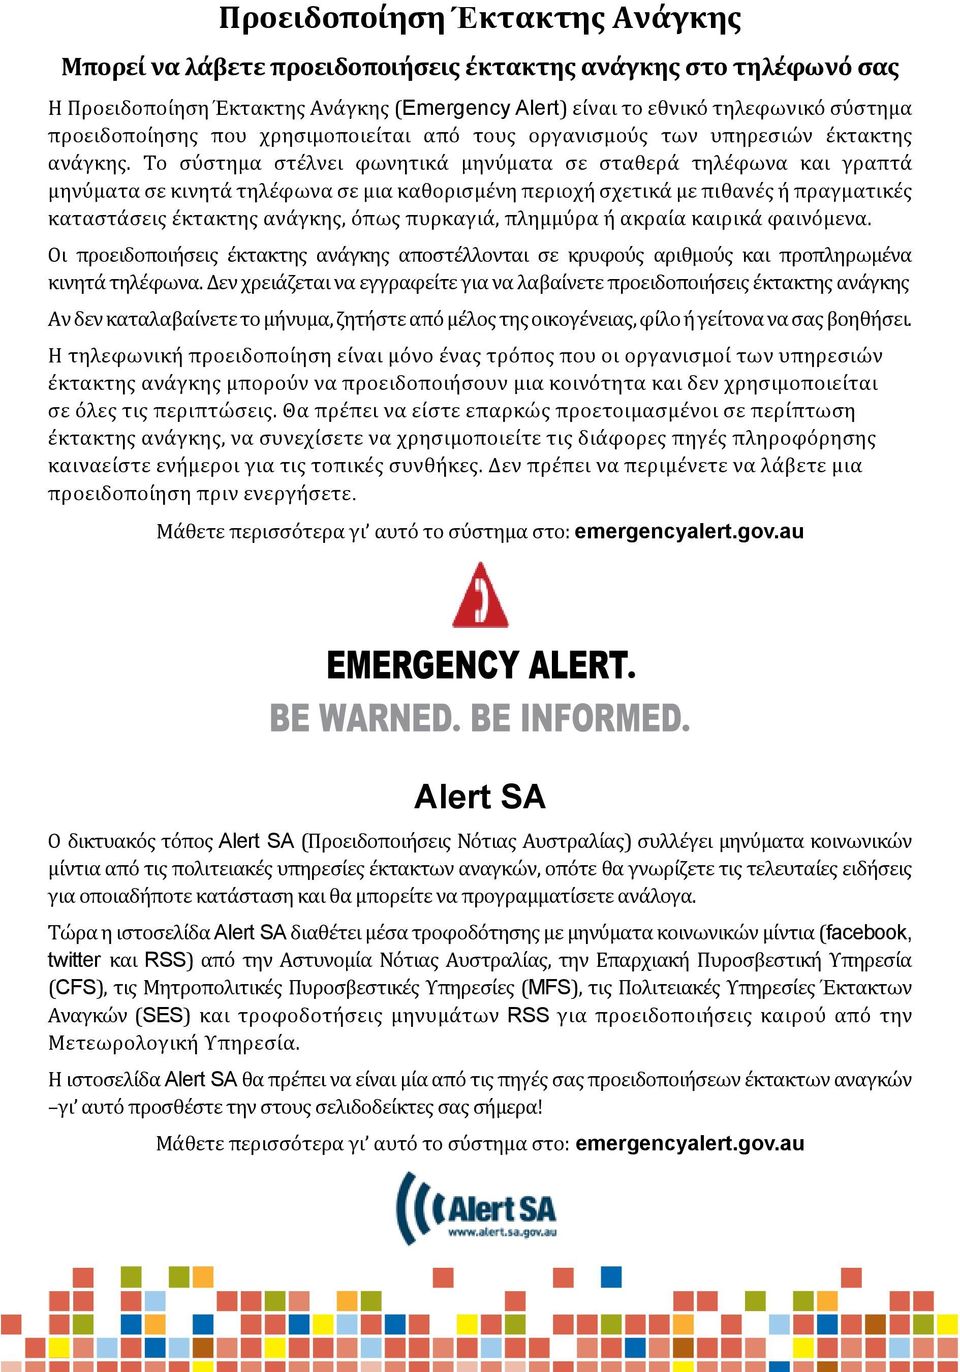 Η Προειδοποίηση Έκτακτης Ανάγκης (Emergency Alert) είναι το εθνικό τηλεφωνικό σύστημα προειδοποίησης που χρησιμοποιείται από τους οργανισμούς των υπηρεσιών έκτακτης ανάγκης.